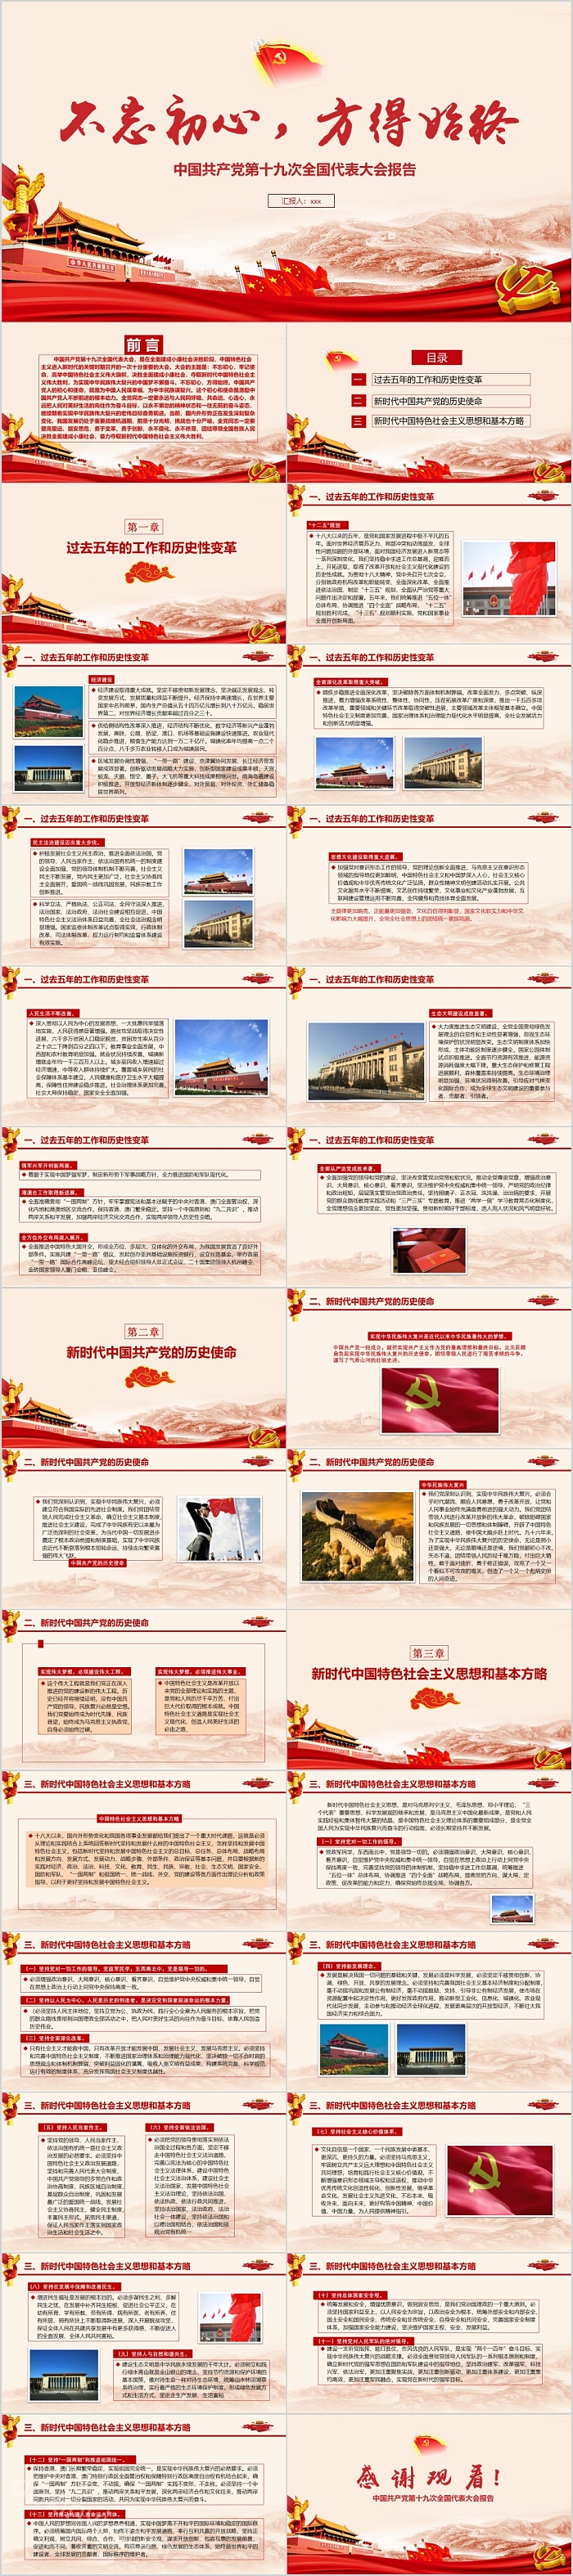 中国共产党第十九次全国代表大会报告PPT